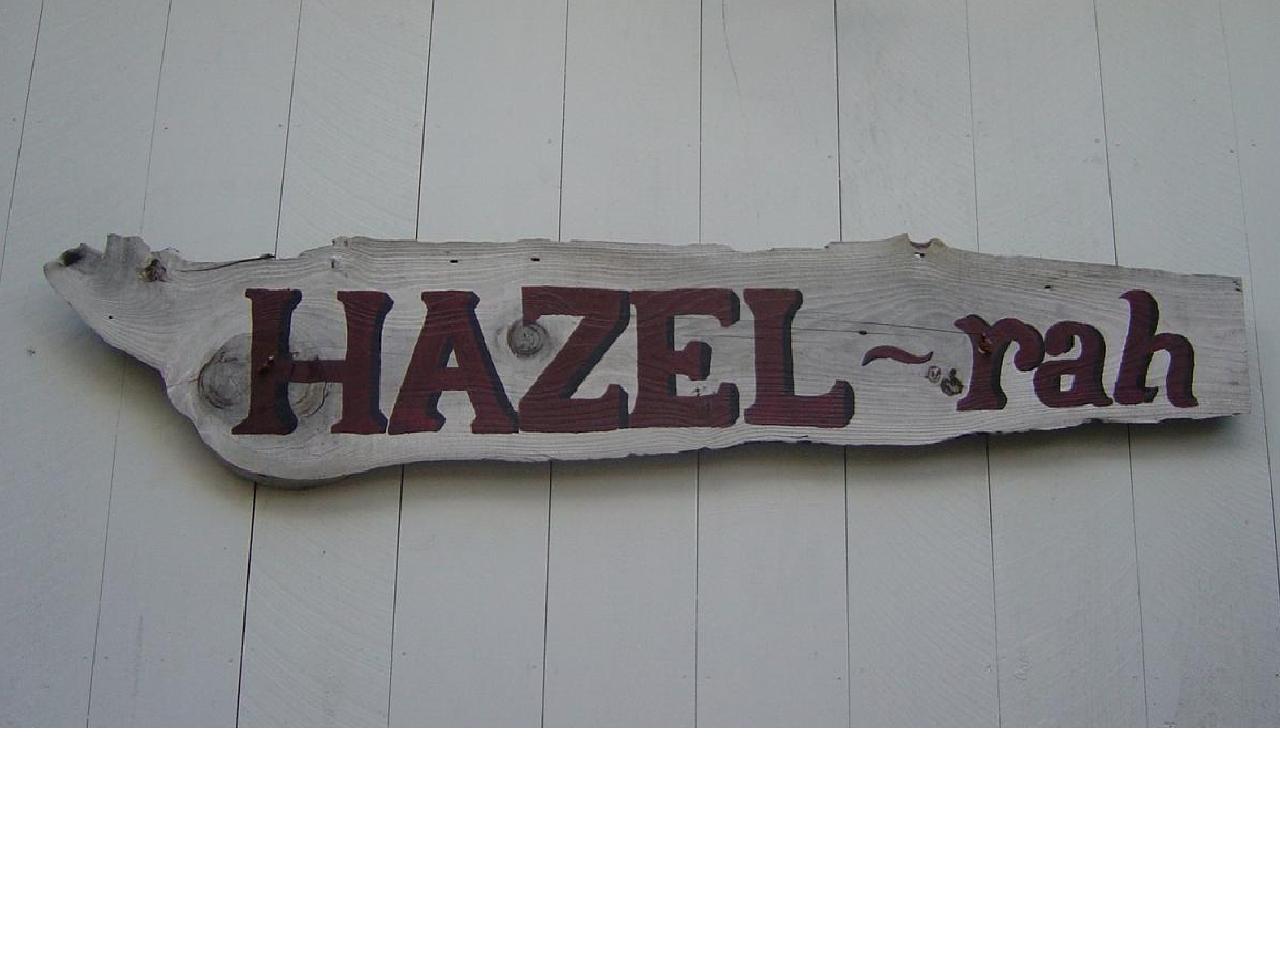 Hazel-rah